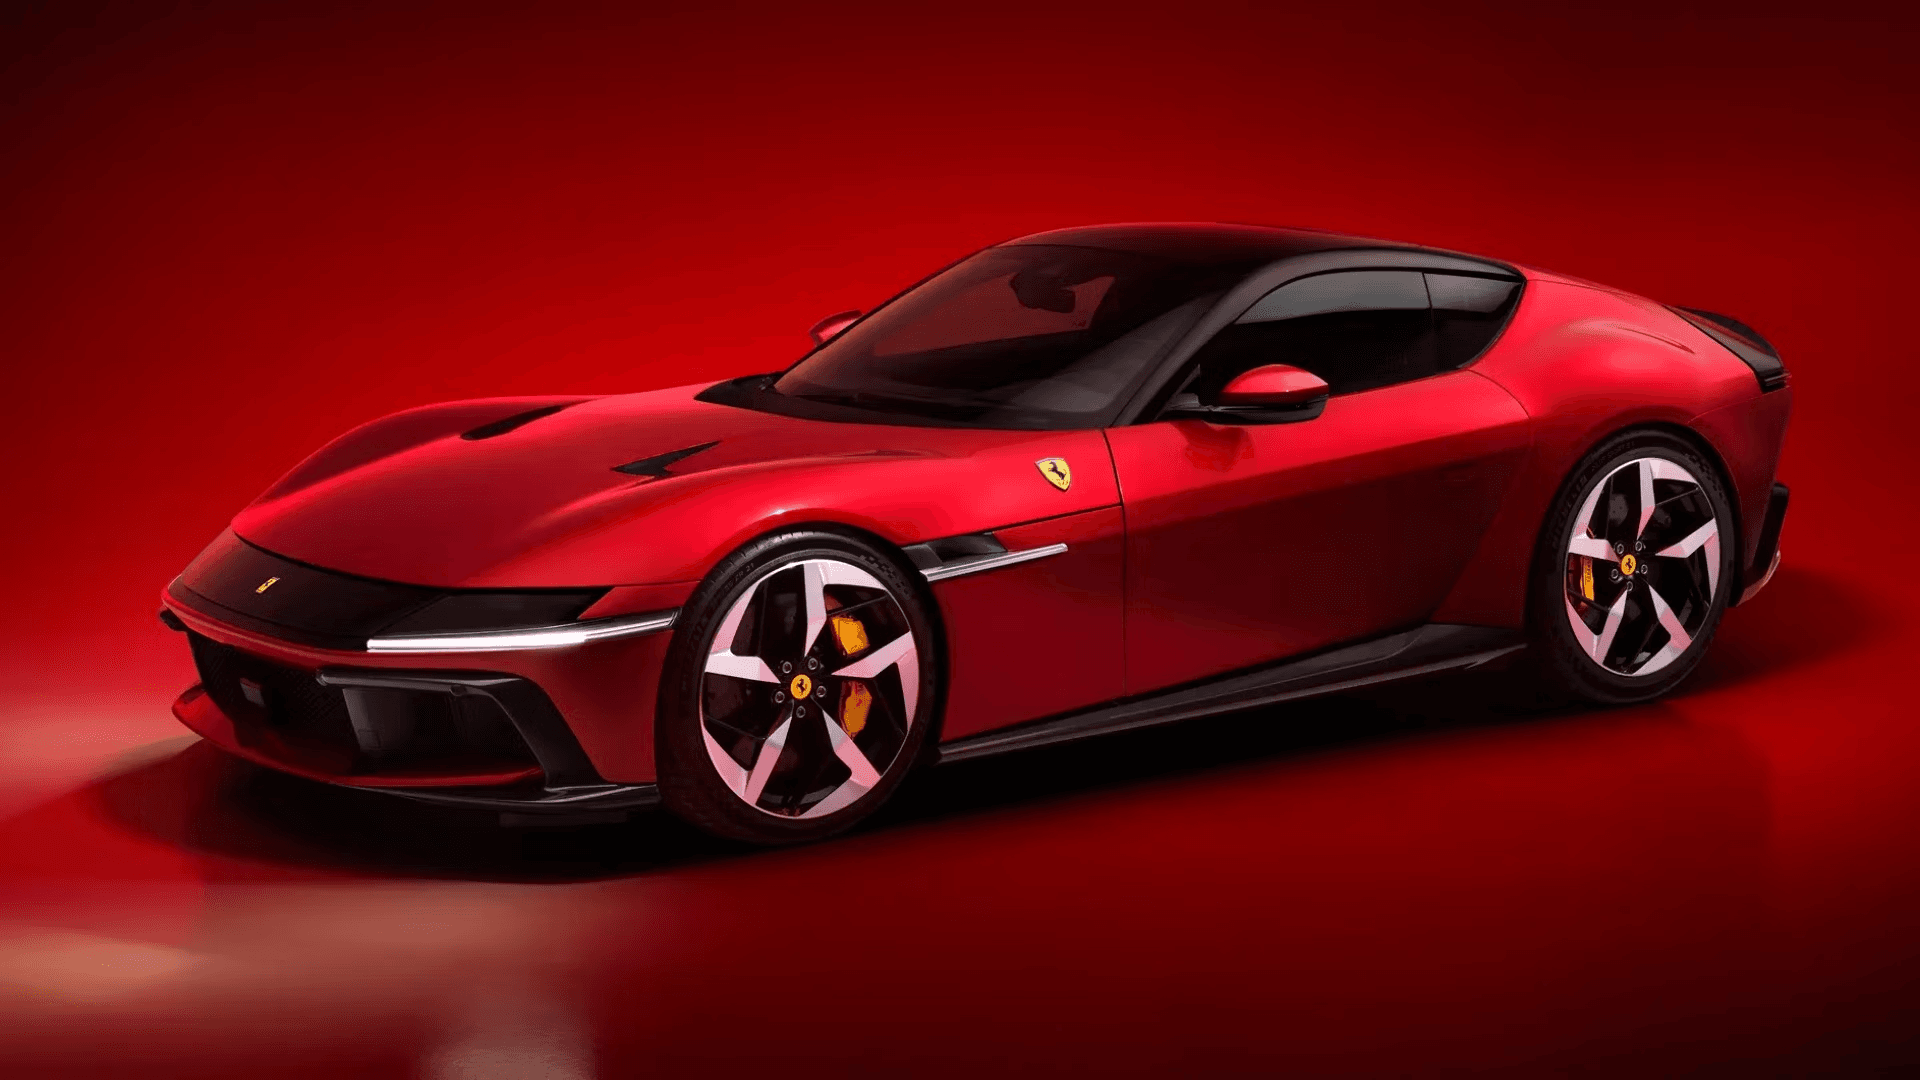 Поприветствуйте Ferrari 12Cilindri: новый суперкар с V12 мощностью 819 л.с. и максимальной скоростью 211 MPH